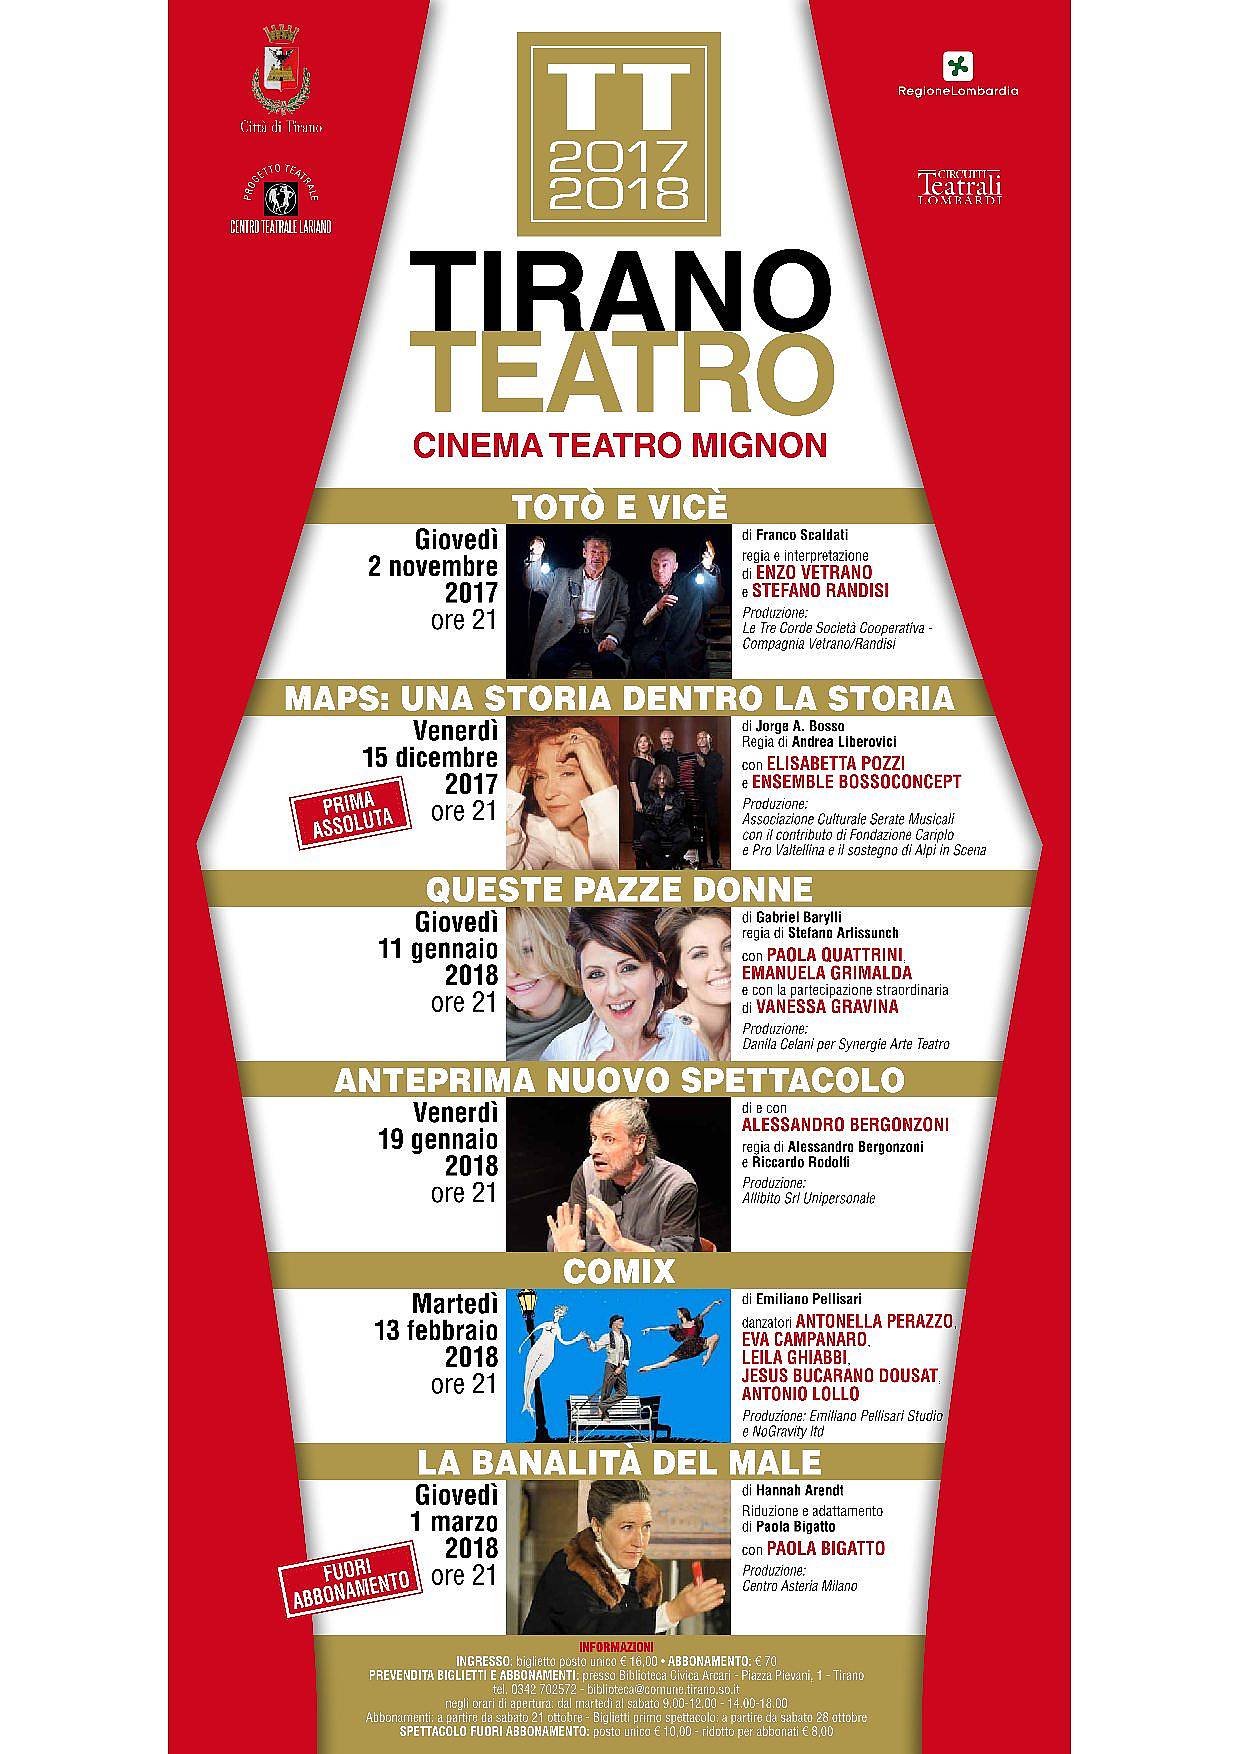 Presentata la stagione teatrale TIRANO TEATRO.